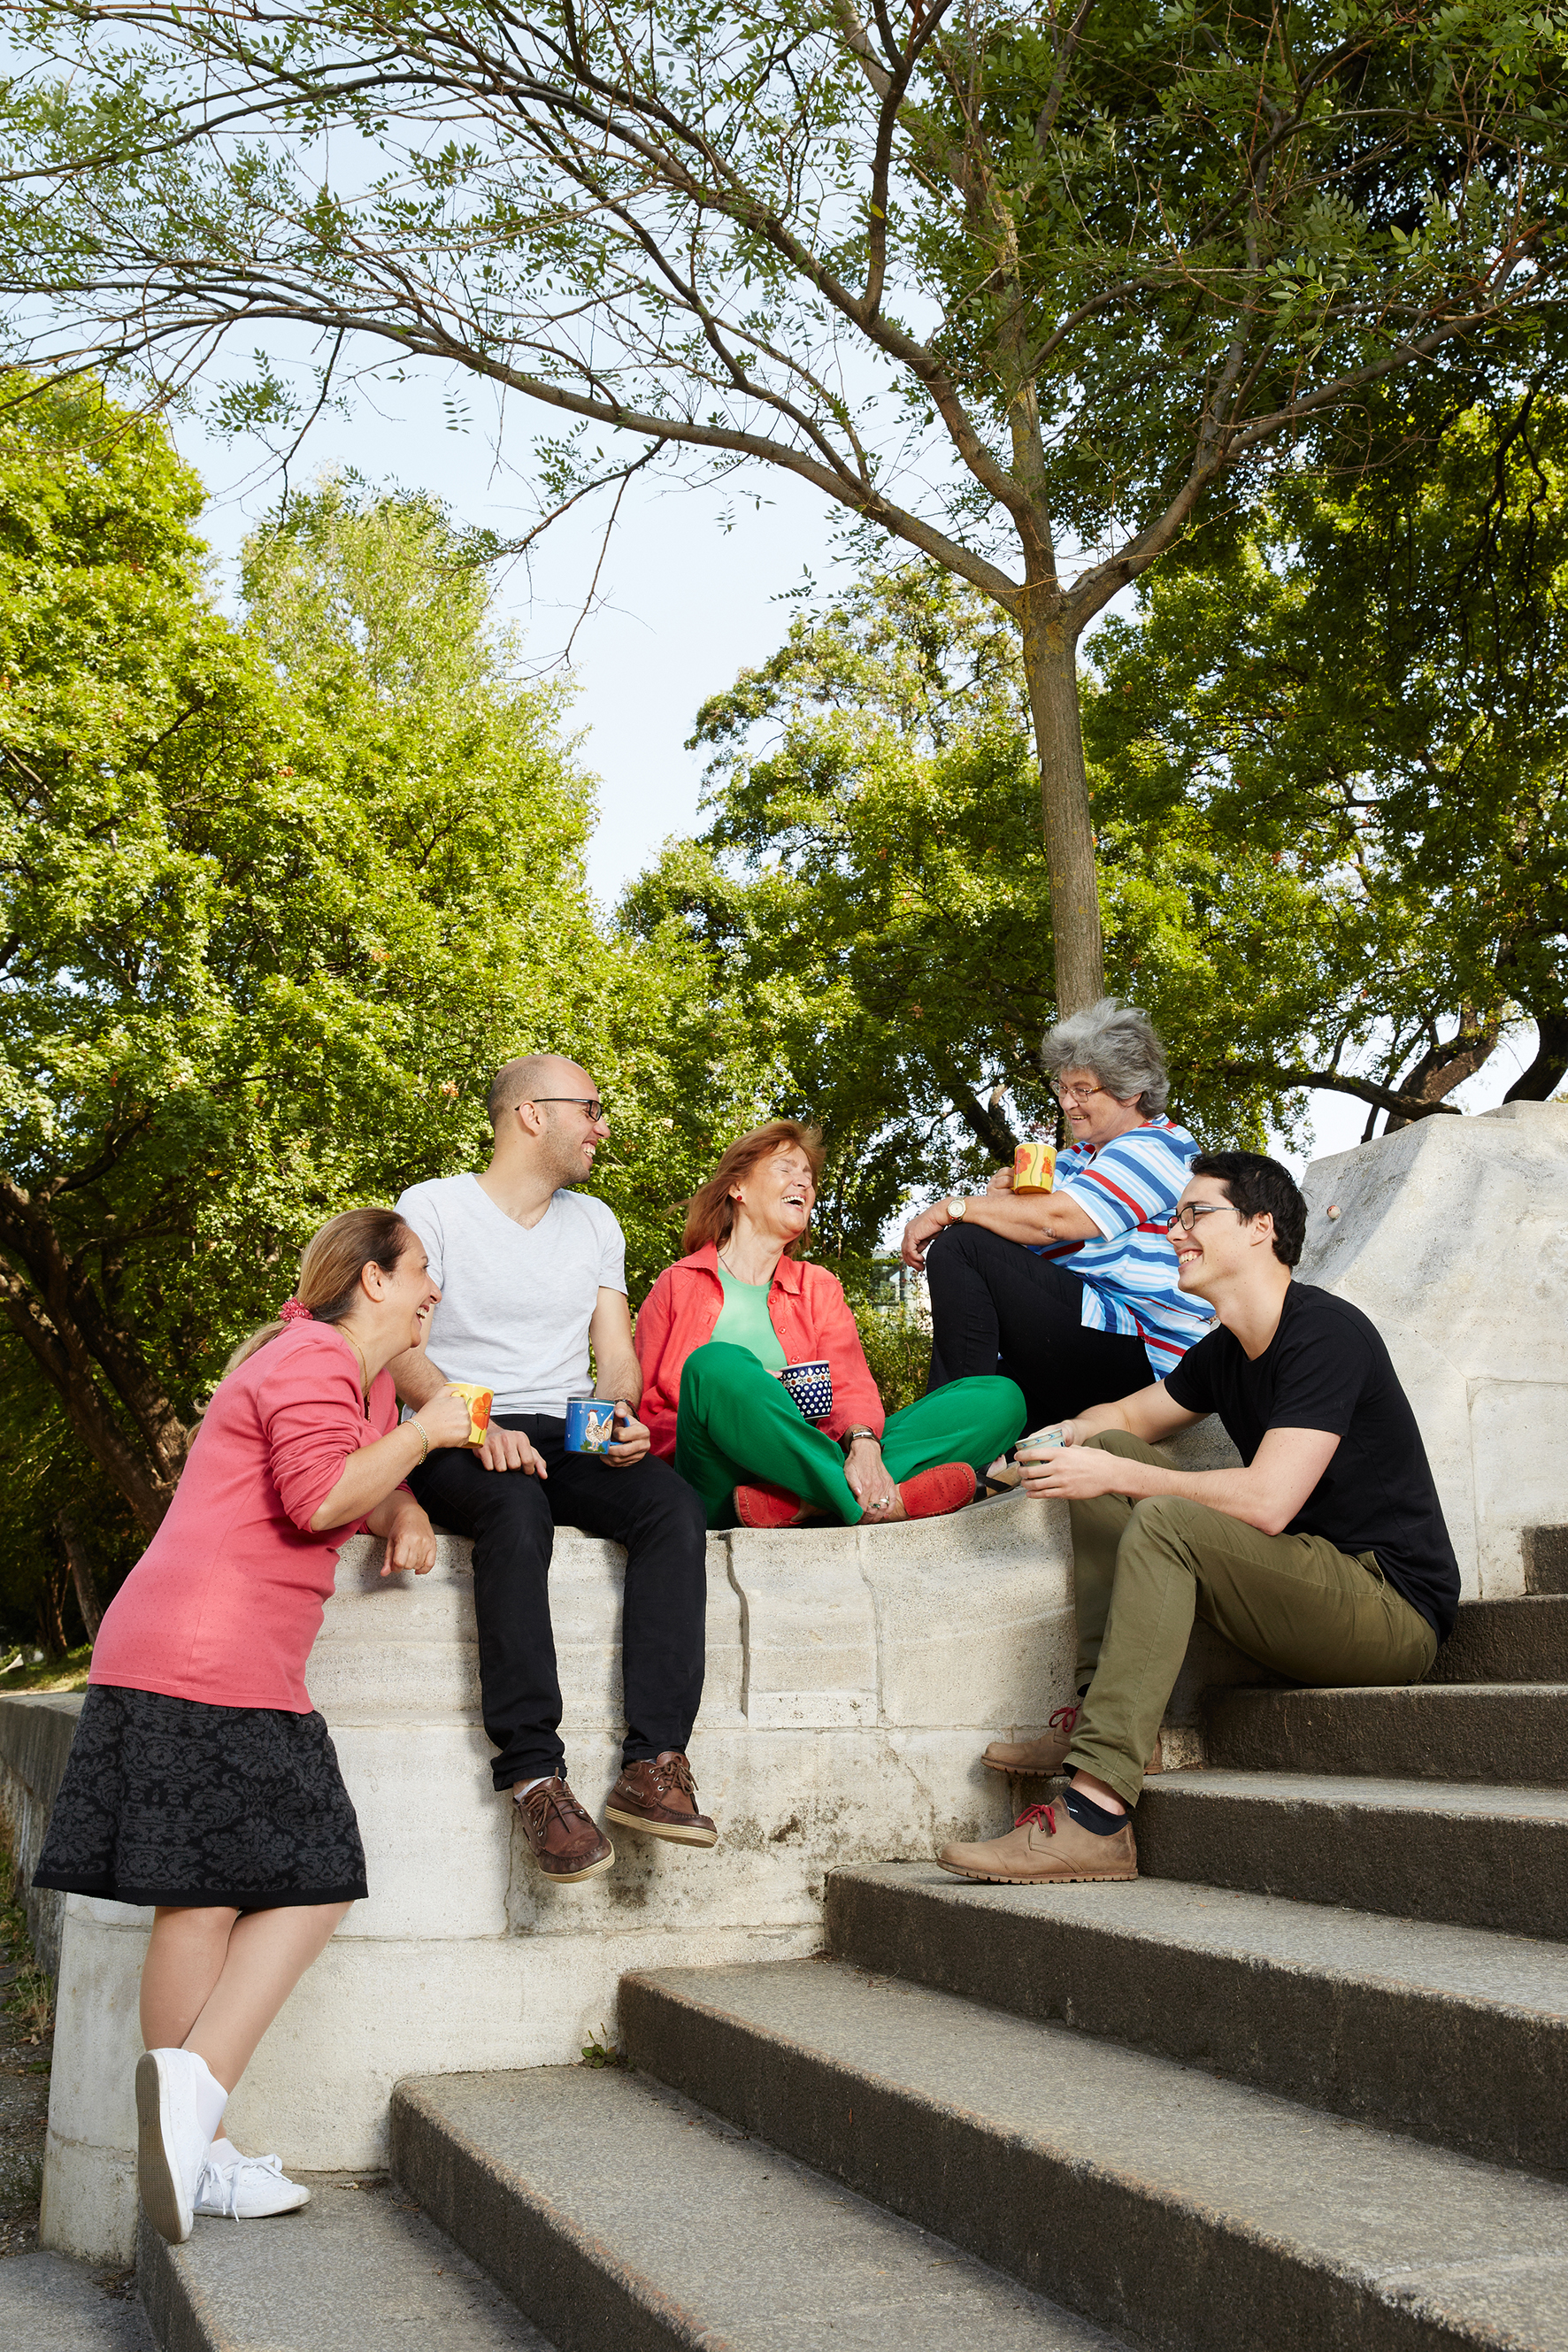 5 Frauen und Männer plaudern mit bunten Kaffeetassen im Park